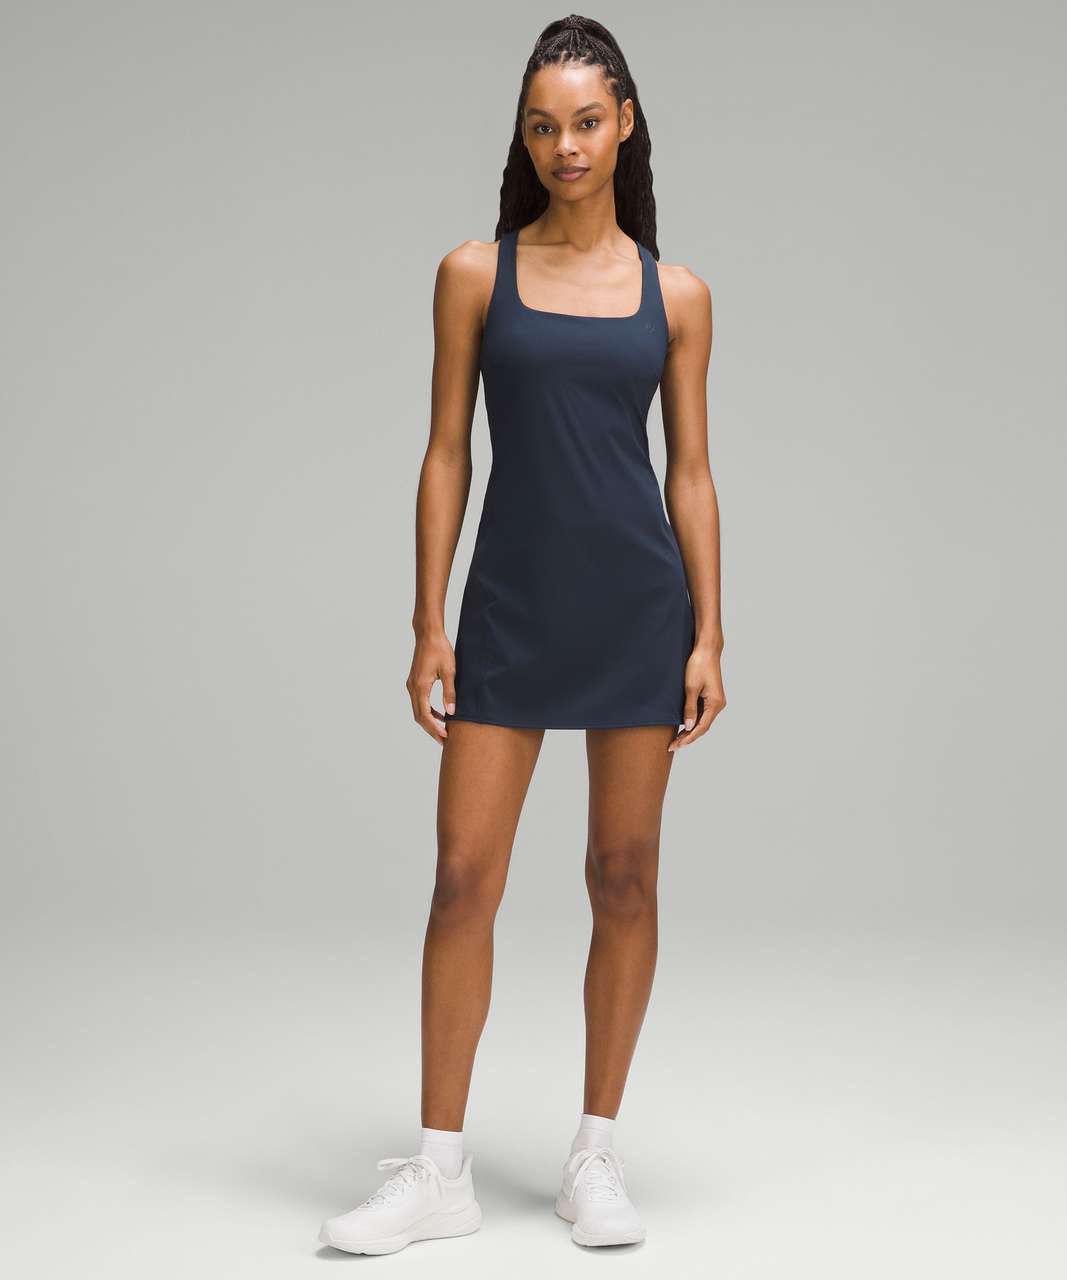 Lululemon Lightweight Tennis Dress - True Navy